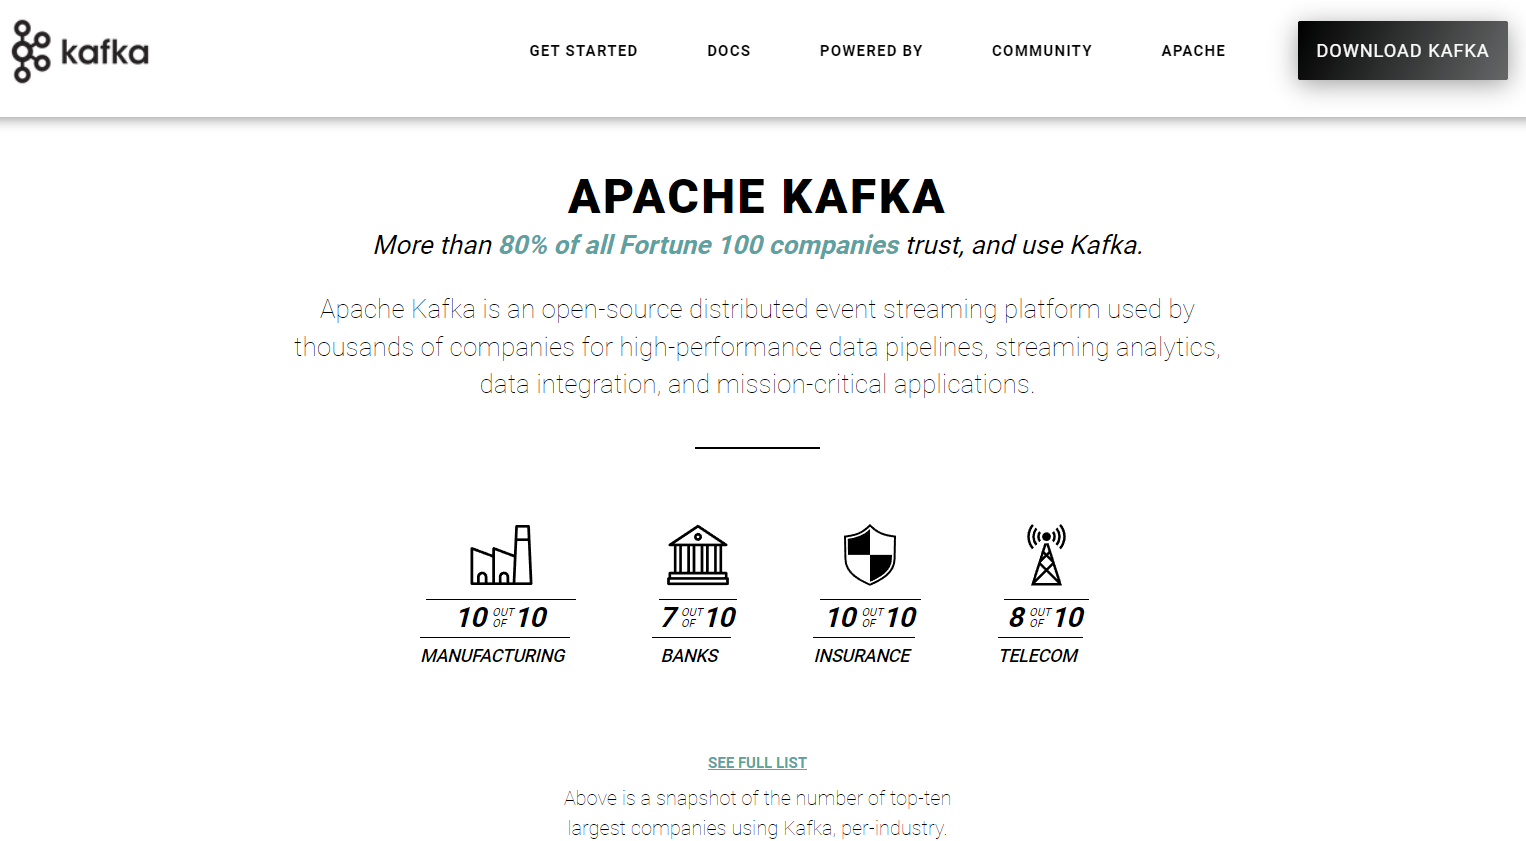 ฐานข้อมูล Apache Kafka